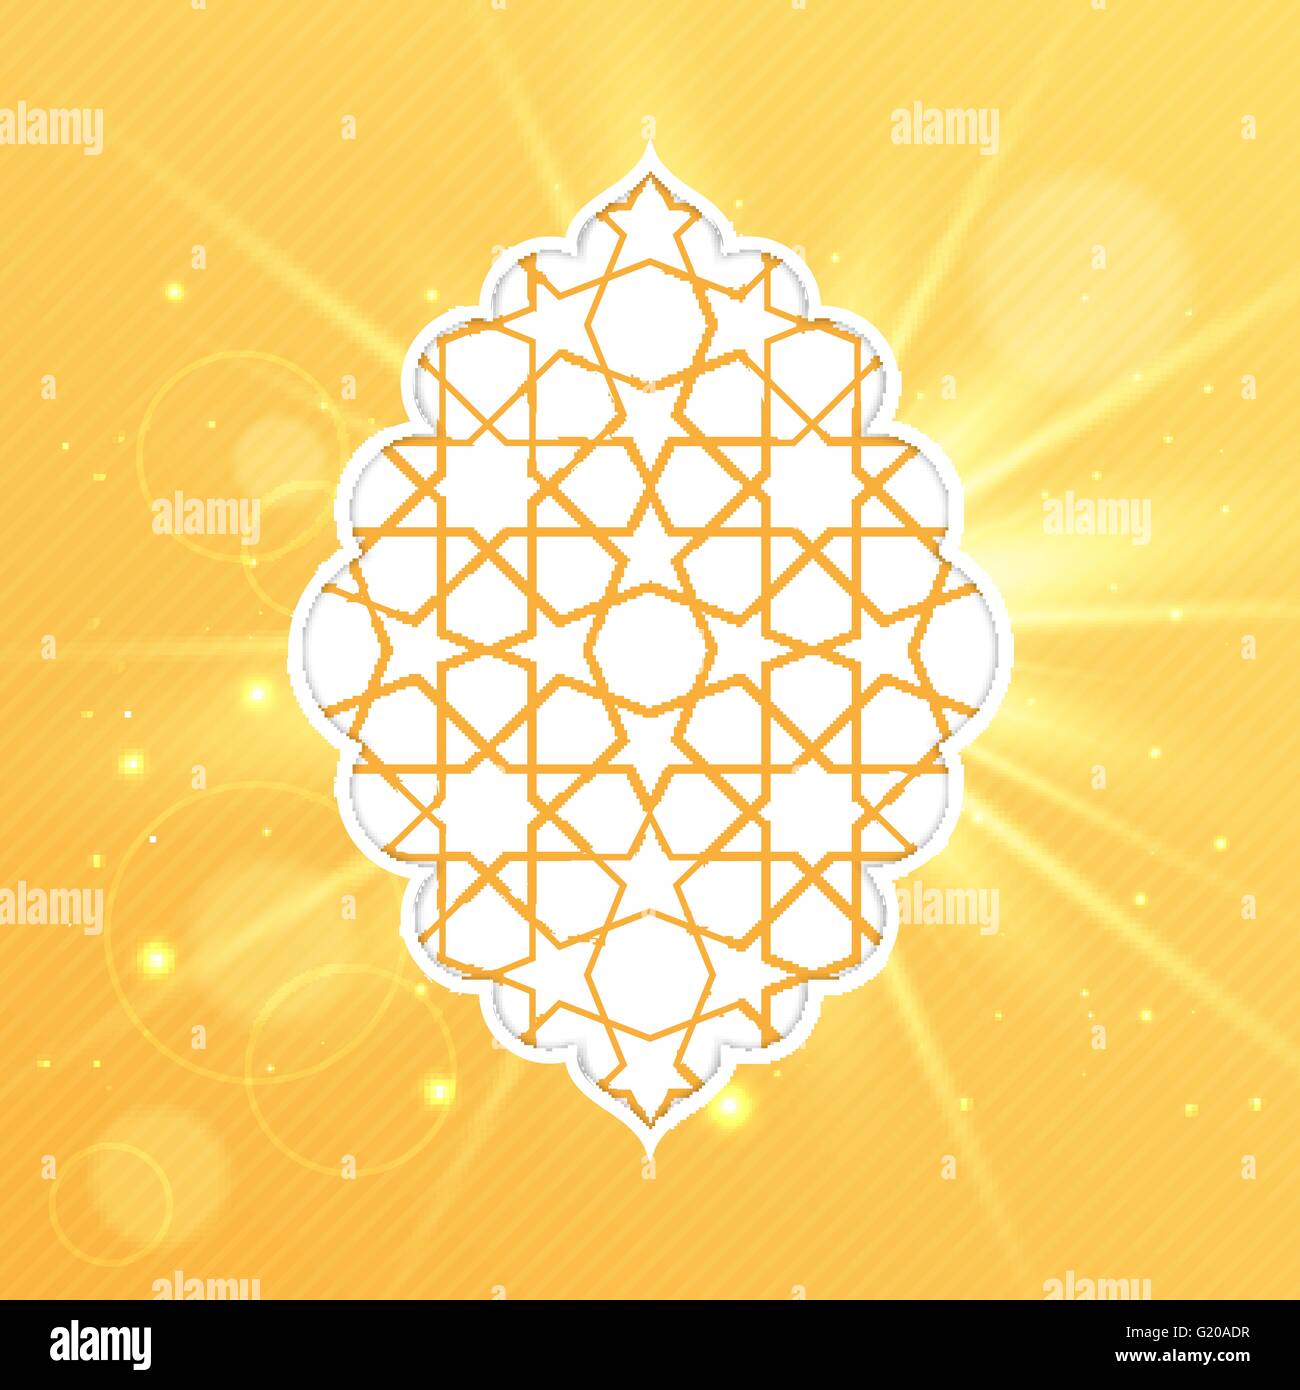 Illustrazione Vettoriale di Eid Mubarak greeting card design Islamico con motivo decorativo su golden sfondo luminoso Illustrazione Vettoriale